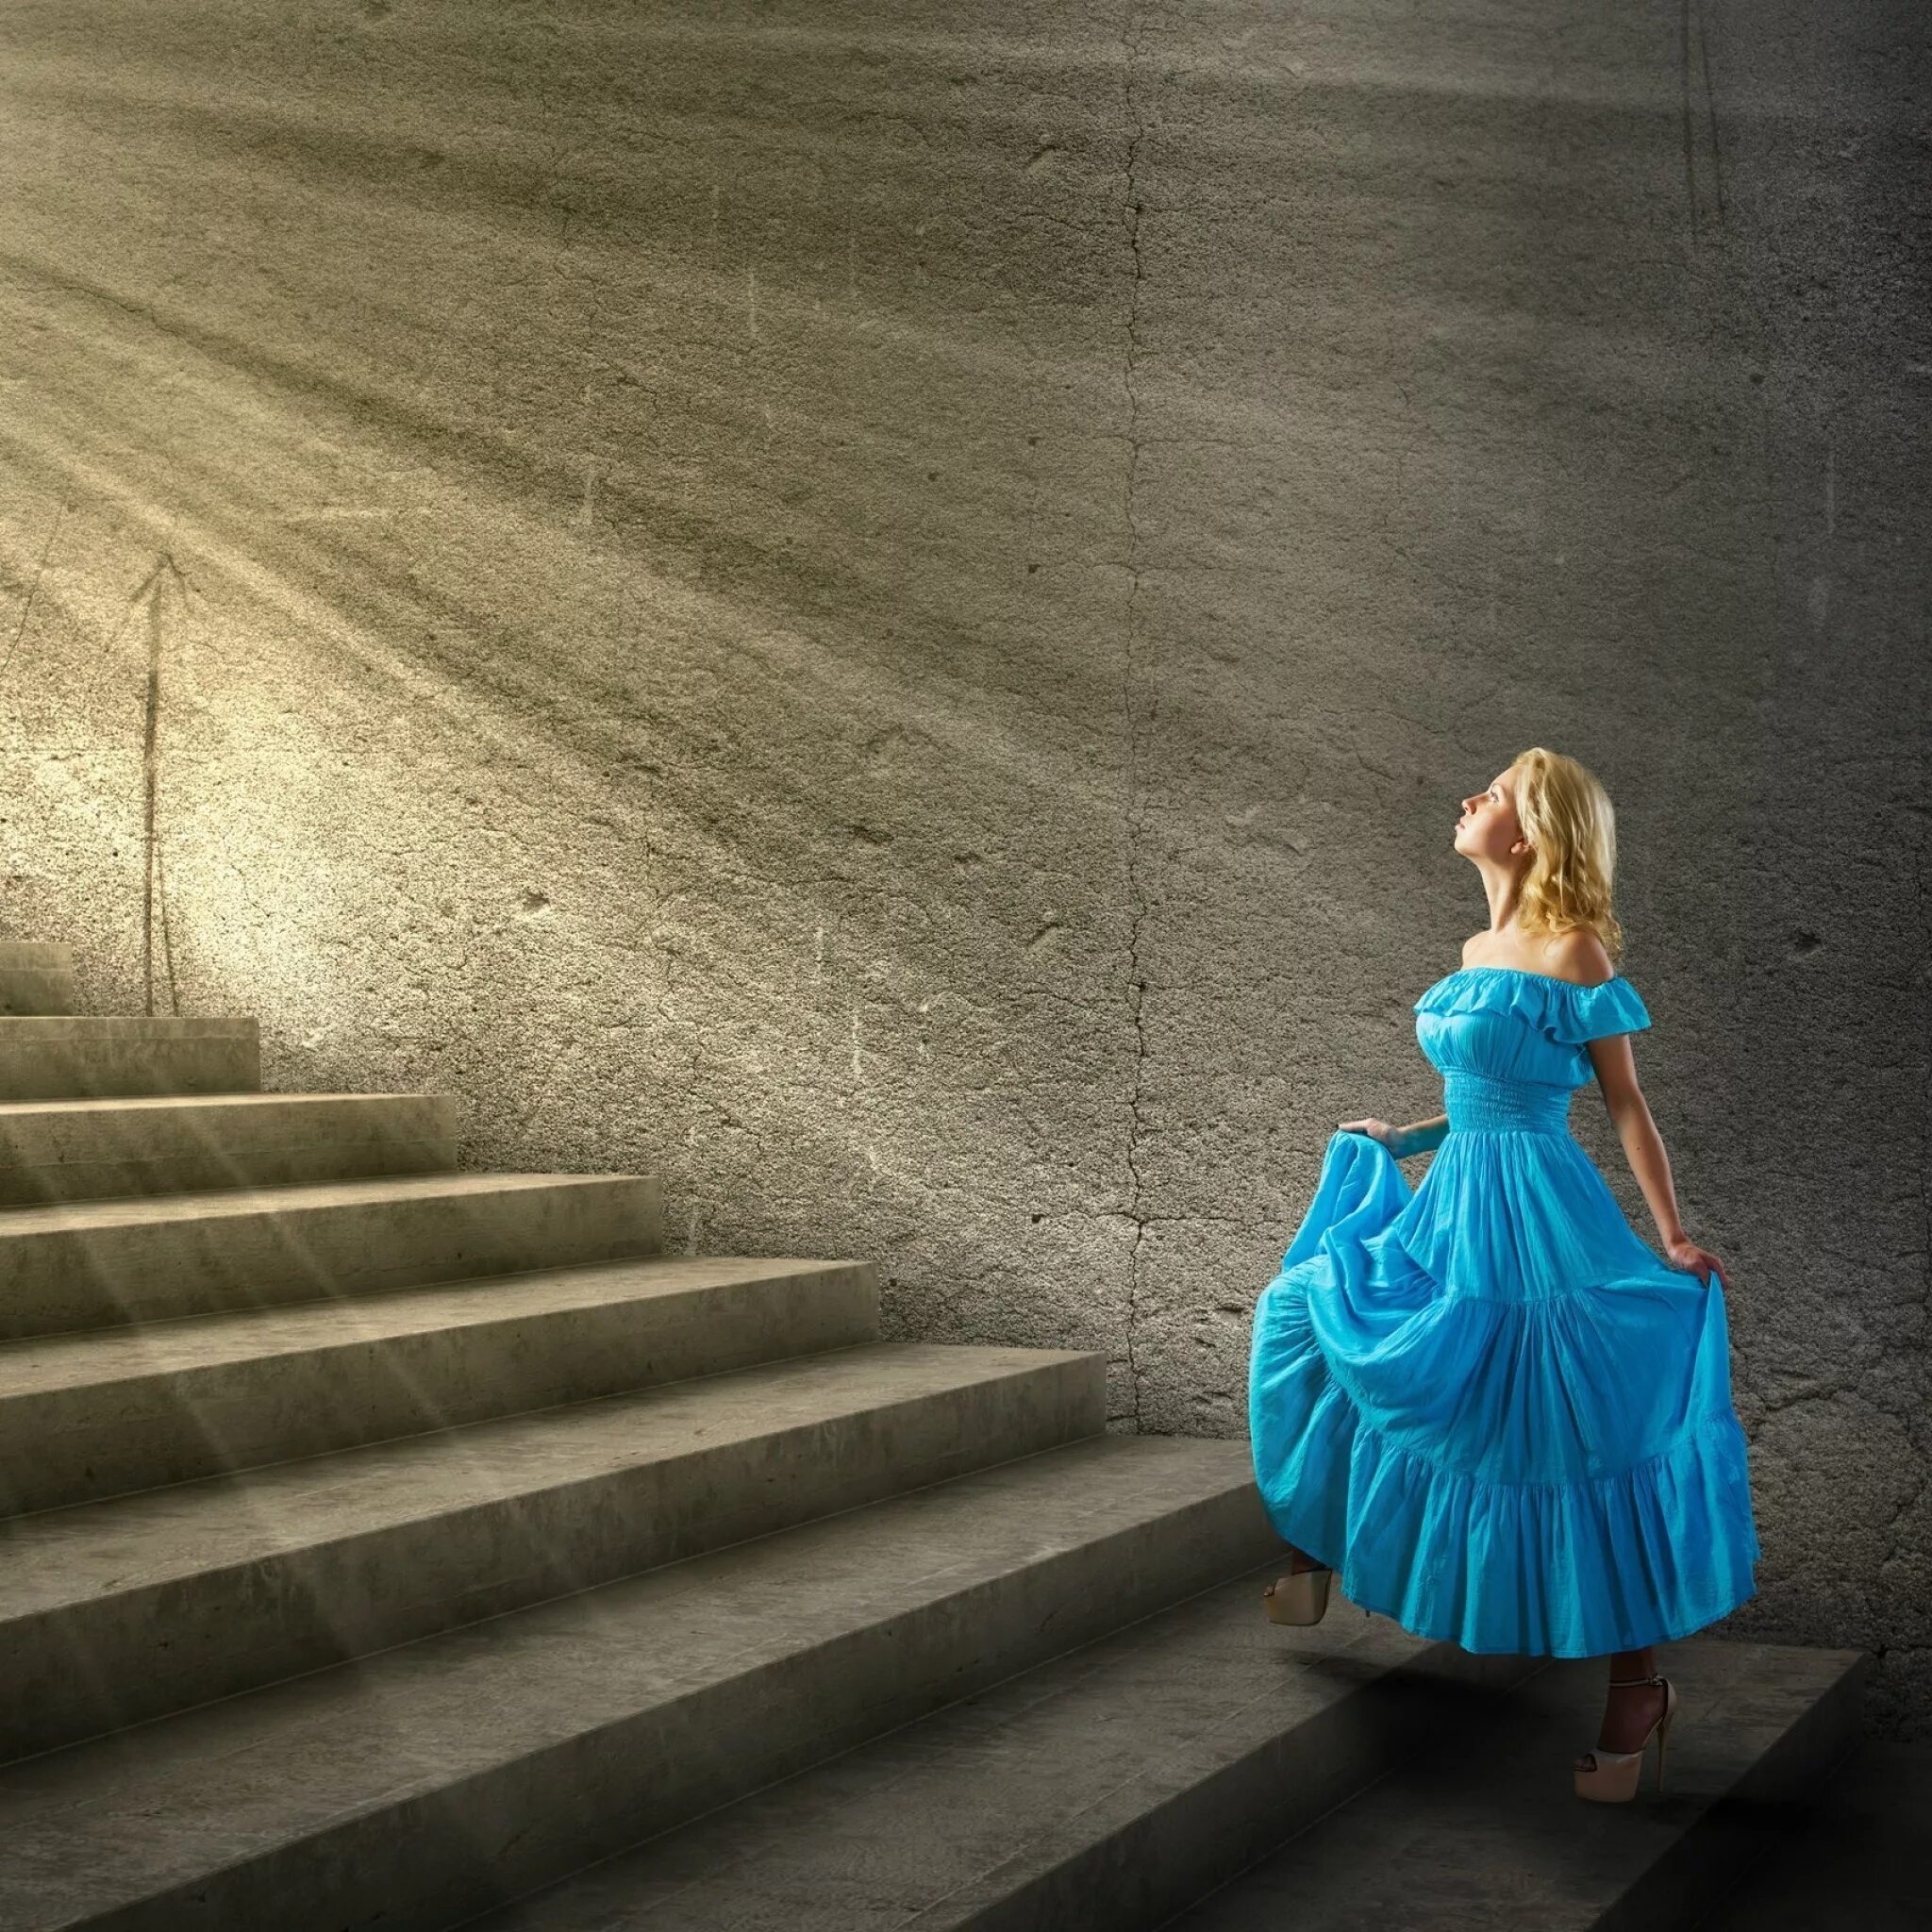 Дамы потихоньку пошли за поднимавшимся по лестнице. Девушка в платье. Девушка поднимается по лестнице. Девушка в платье на ступеньках. Девушка на лестнице в платье.